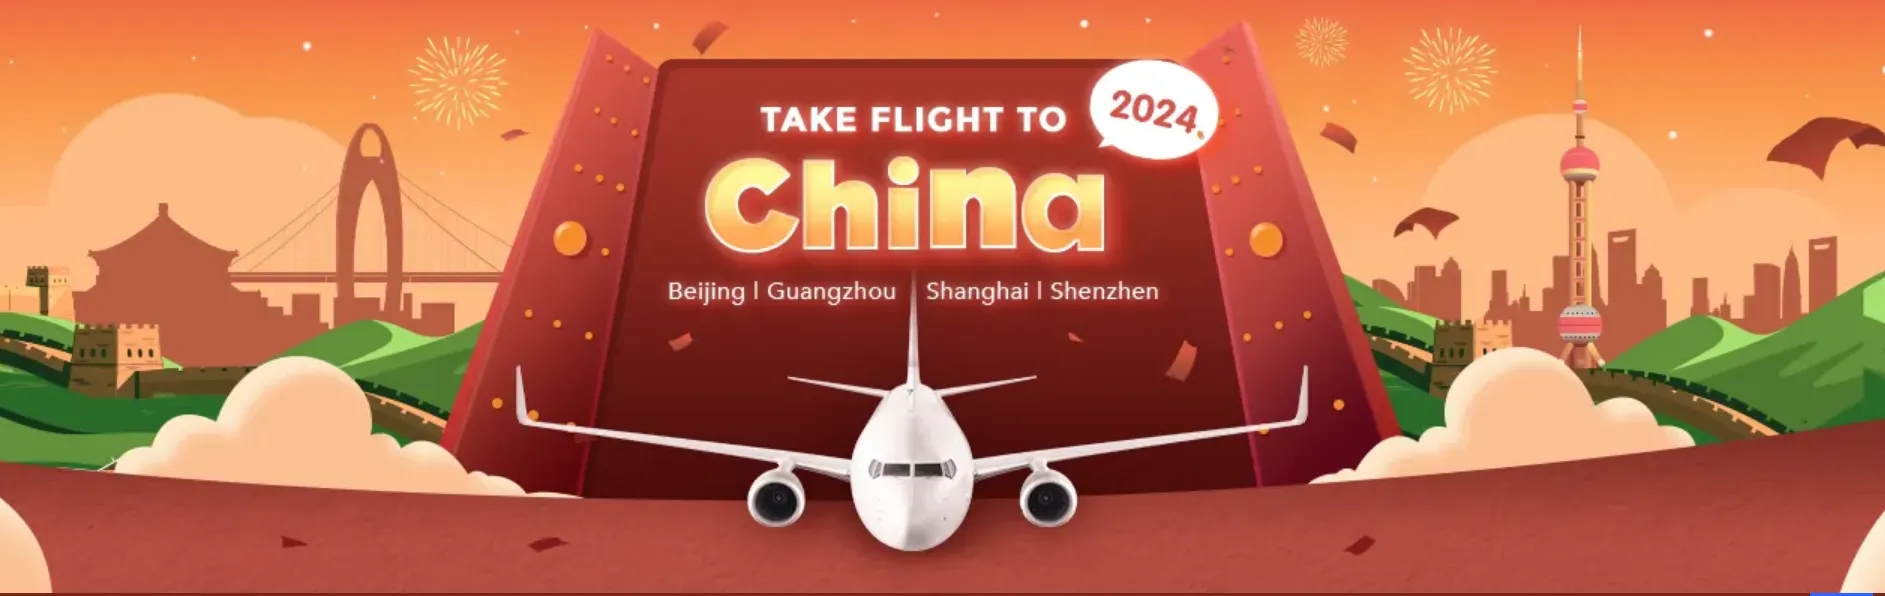 Trip.com Promo Code Singapore: Flight to China